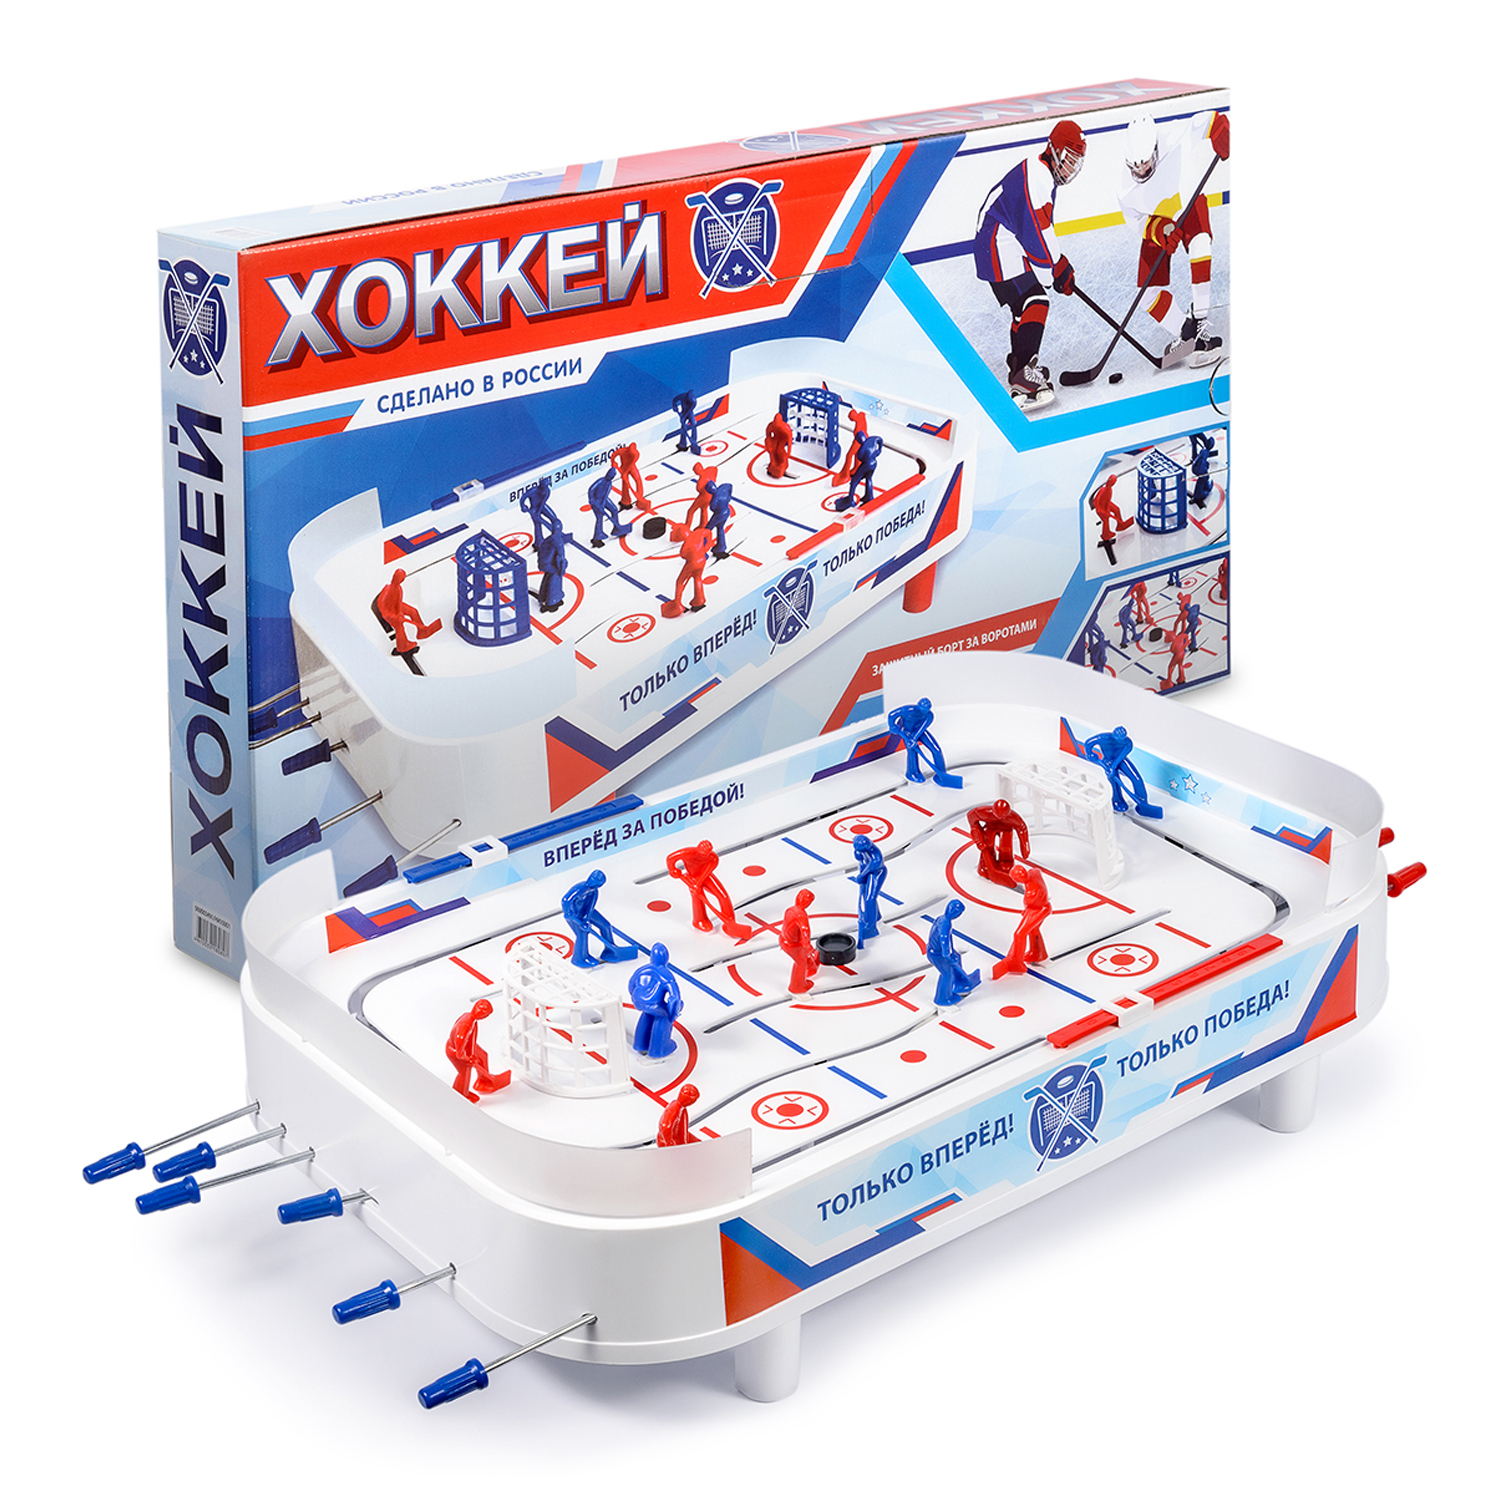 Настольный хоккей Green Plast спортивная игра в коробке для детей и компании - фото 3